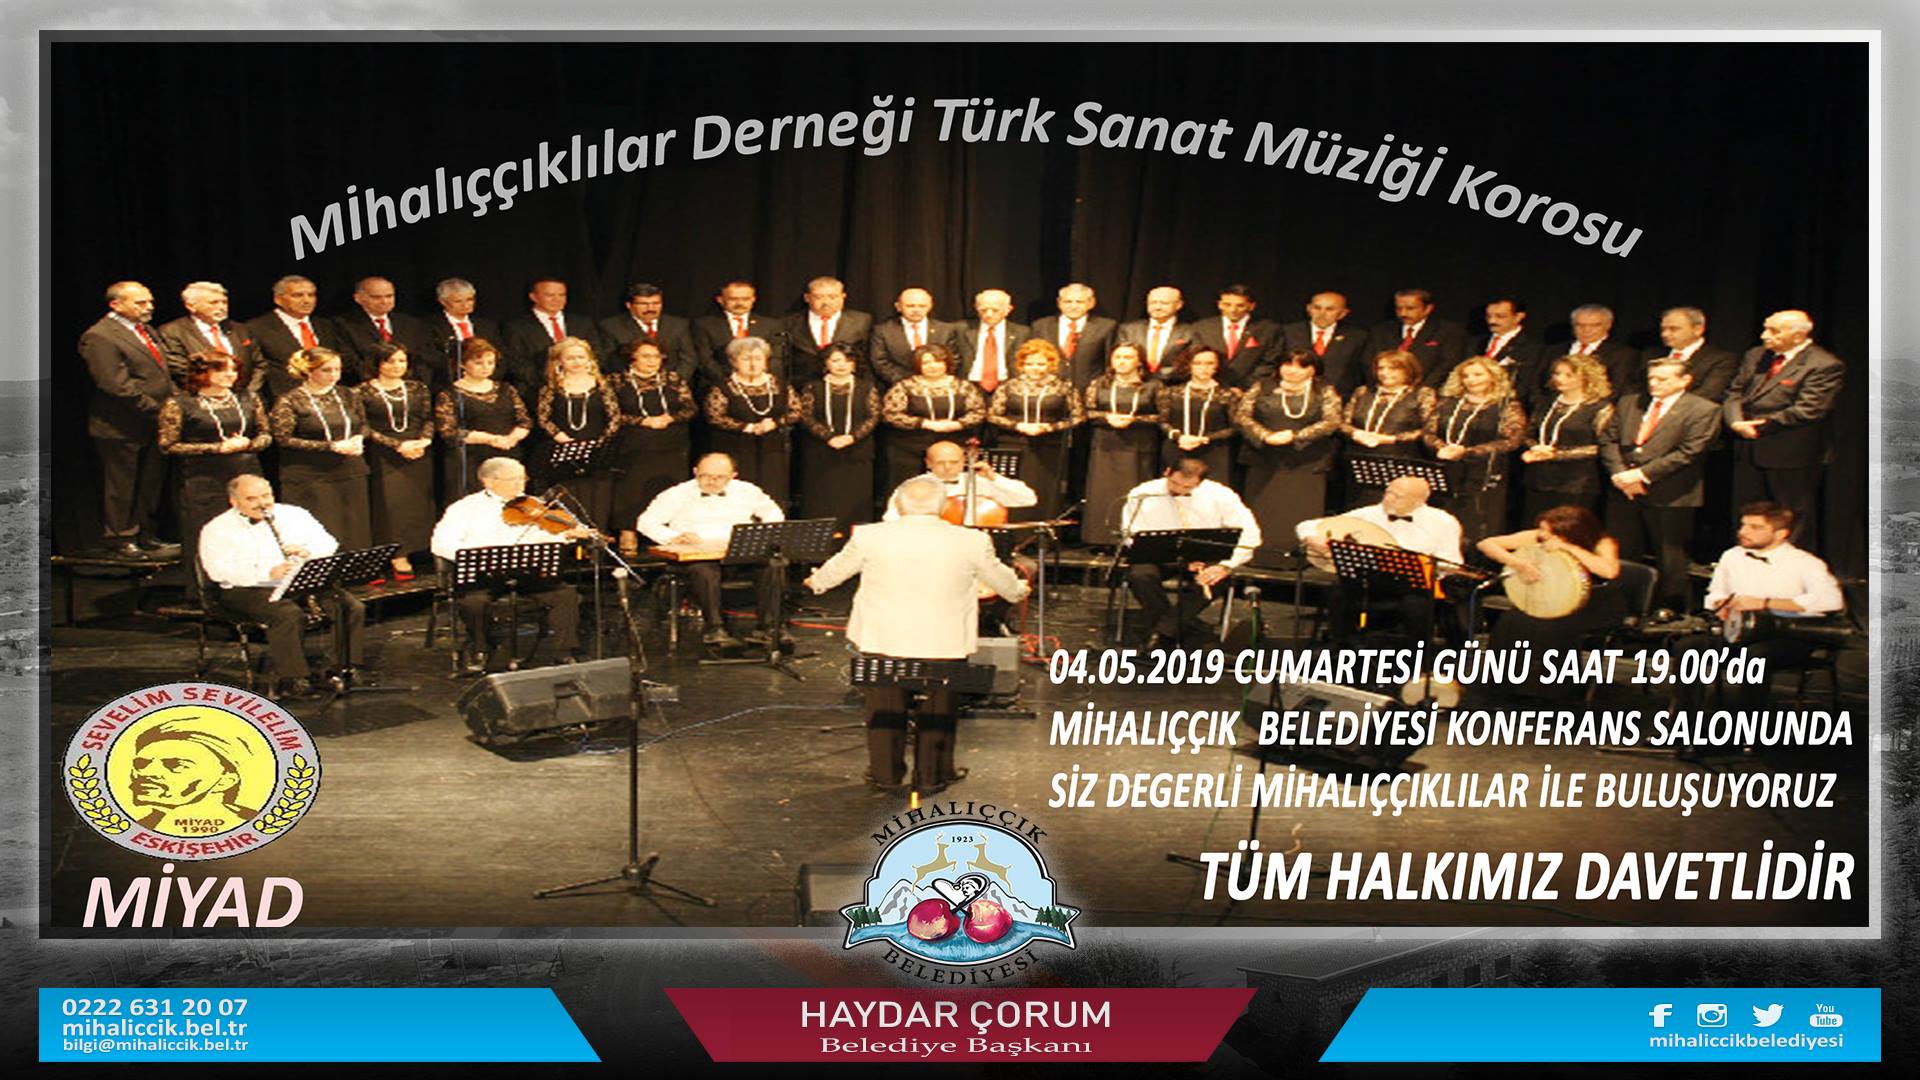 Mihalıççıklılar Derneği Türk Sanat Müziği Korosu Konseri